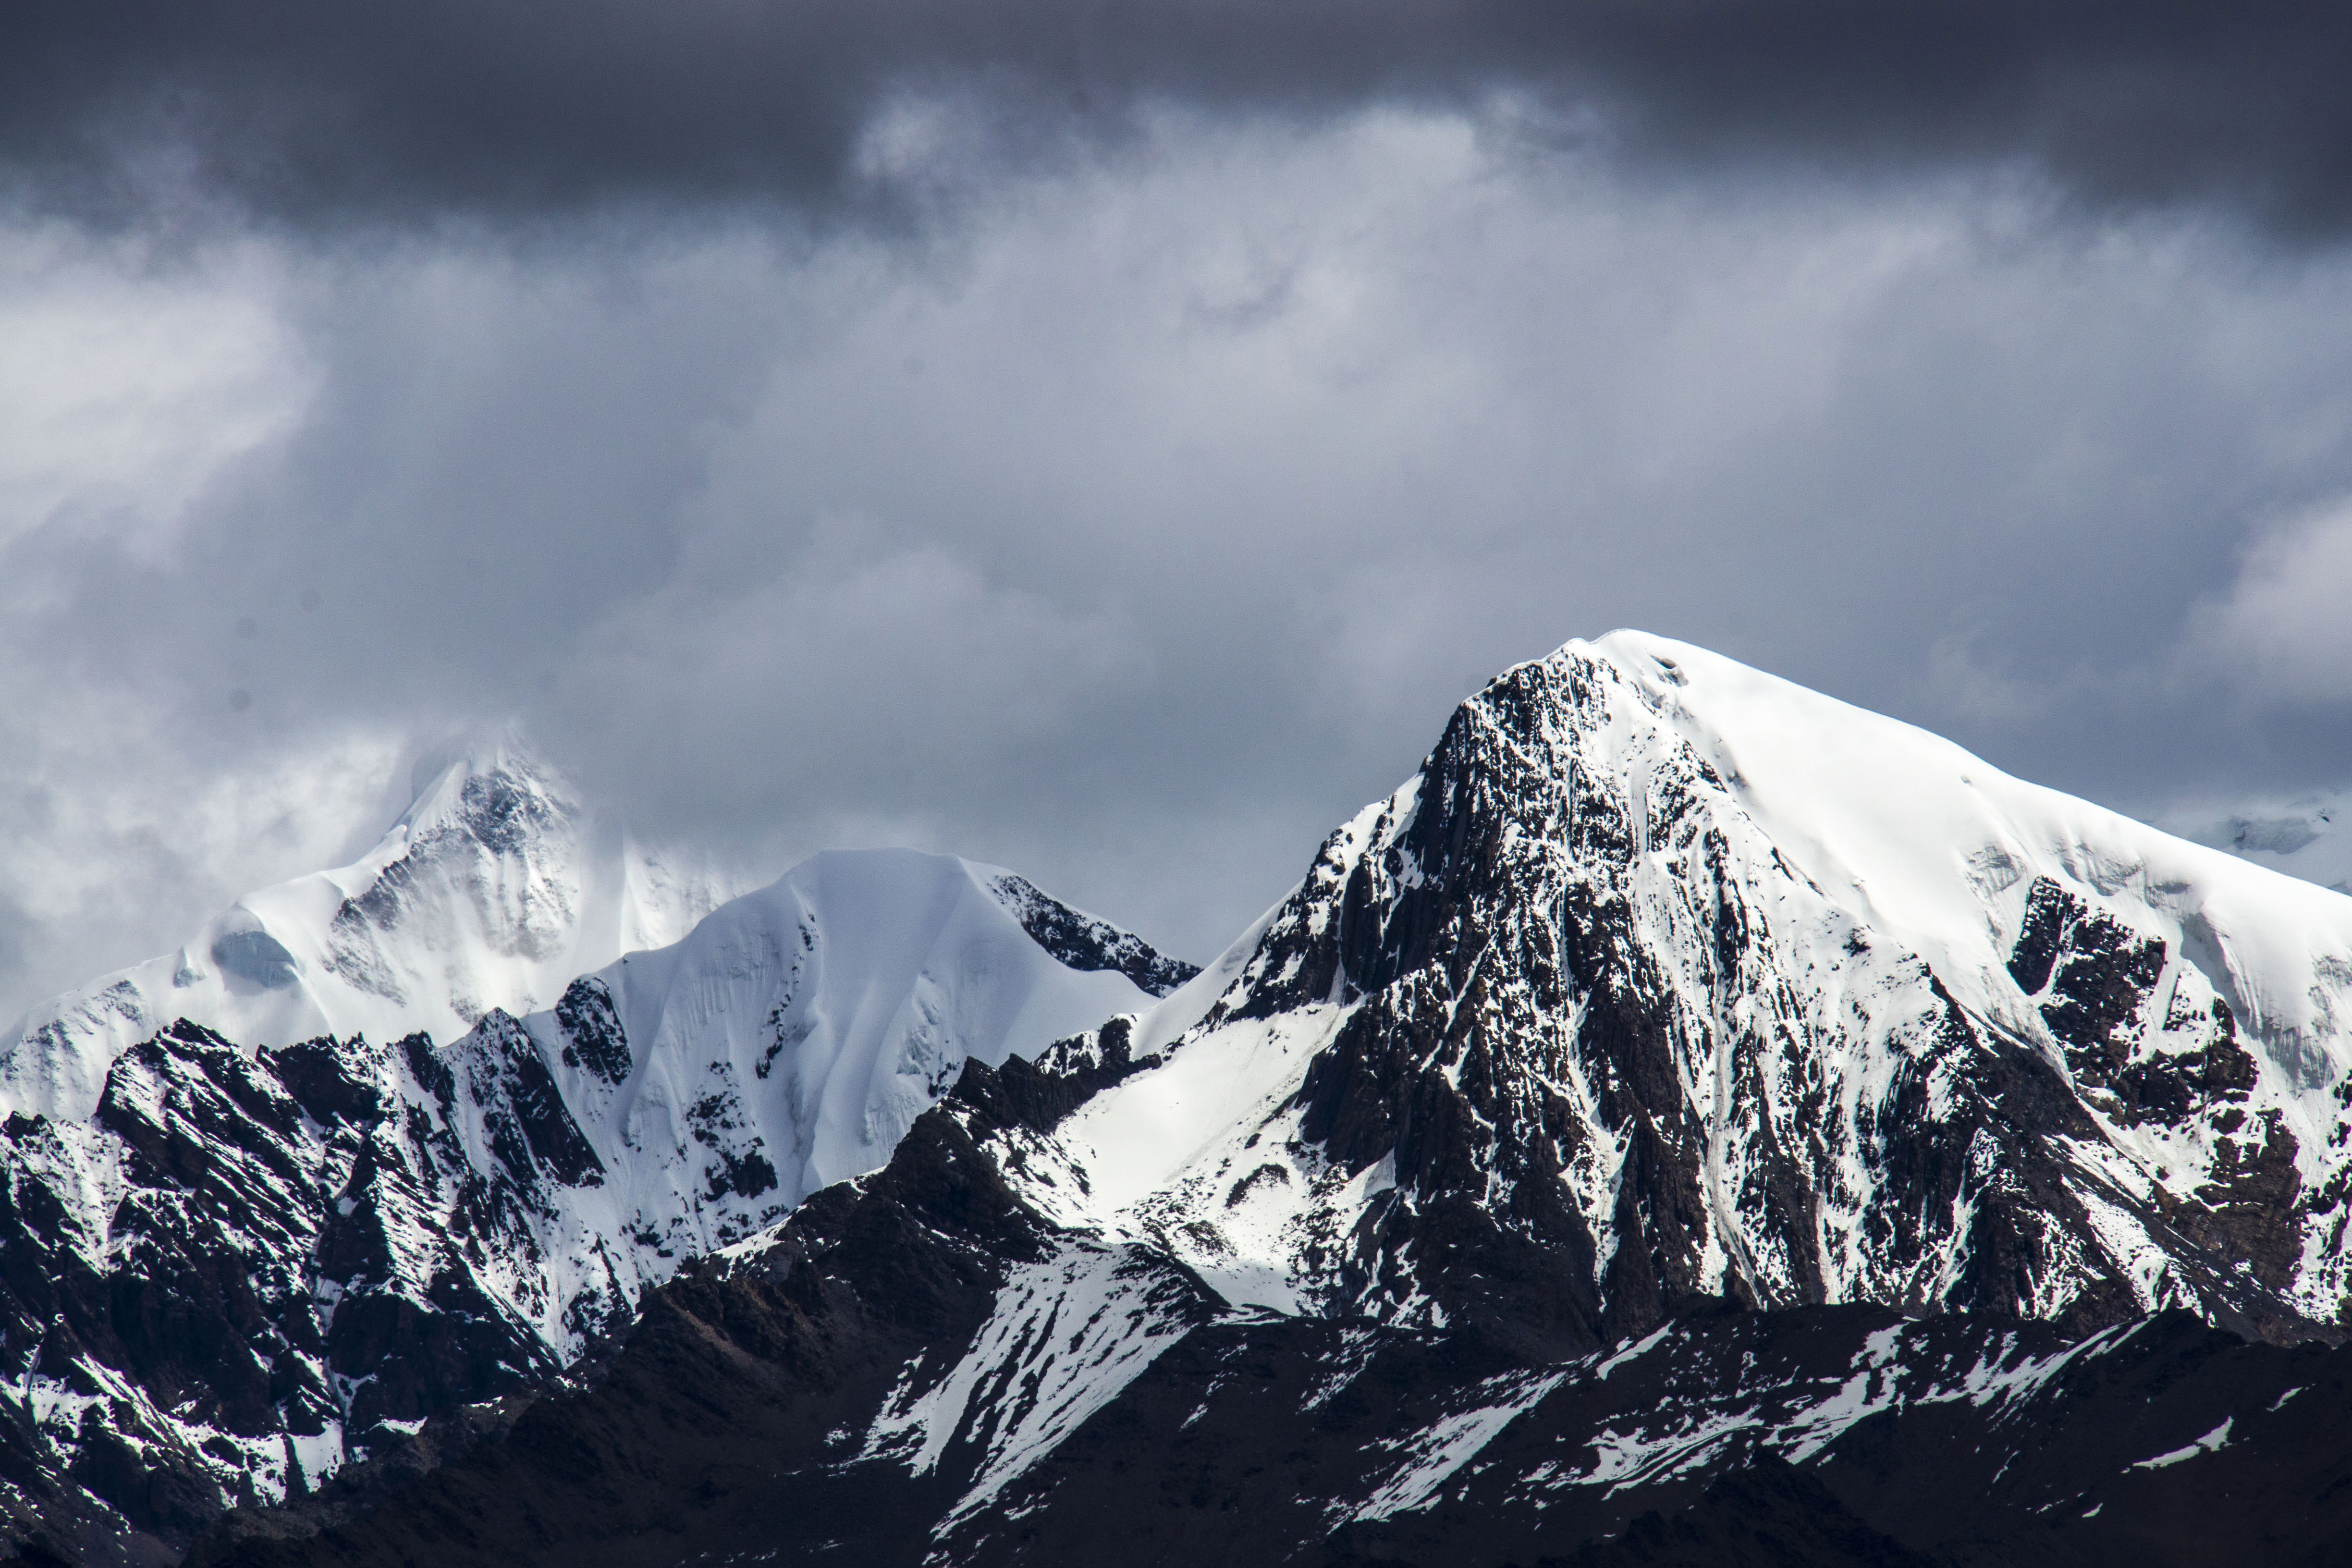 Winter Snow Mountains Free Photo - ISO Republic